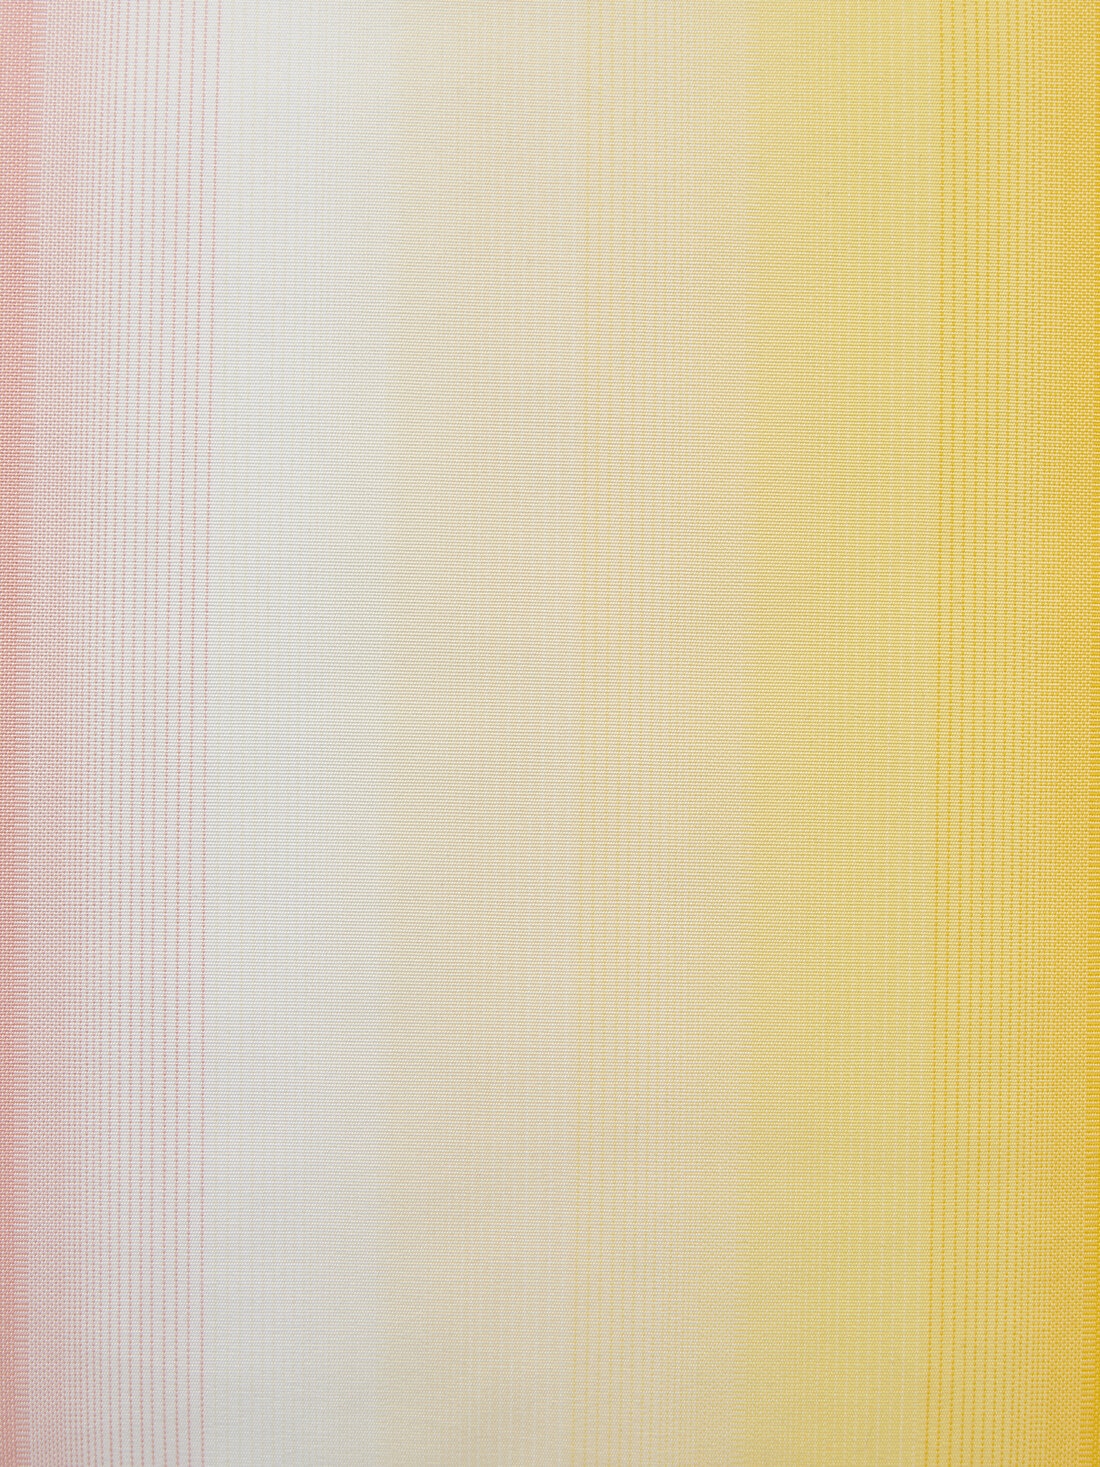 Cuscino da esterni Resort 60x60 cm in canvas sfumato multicolore, Multicolore  - 8051575837692 - 4